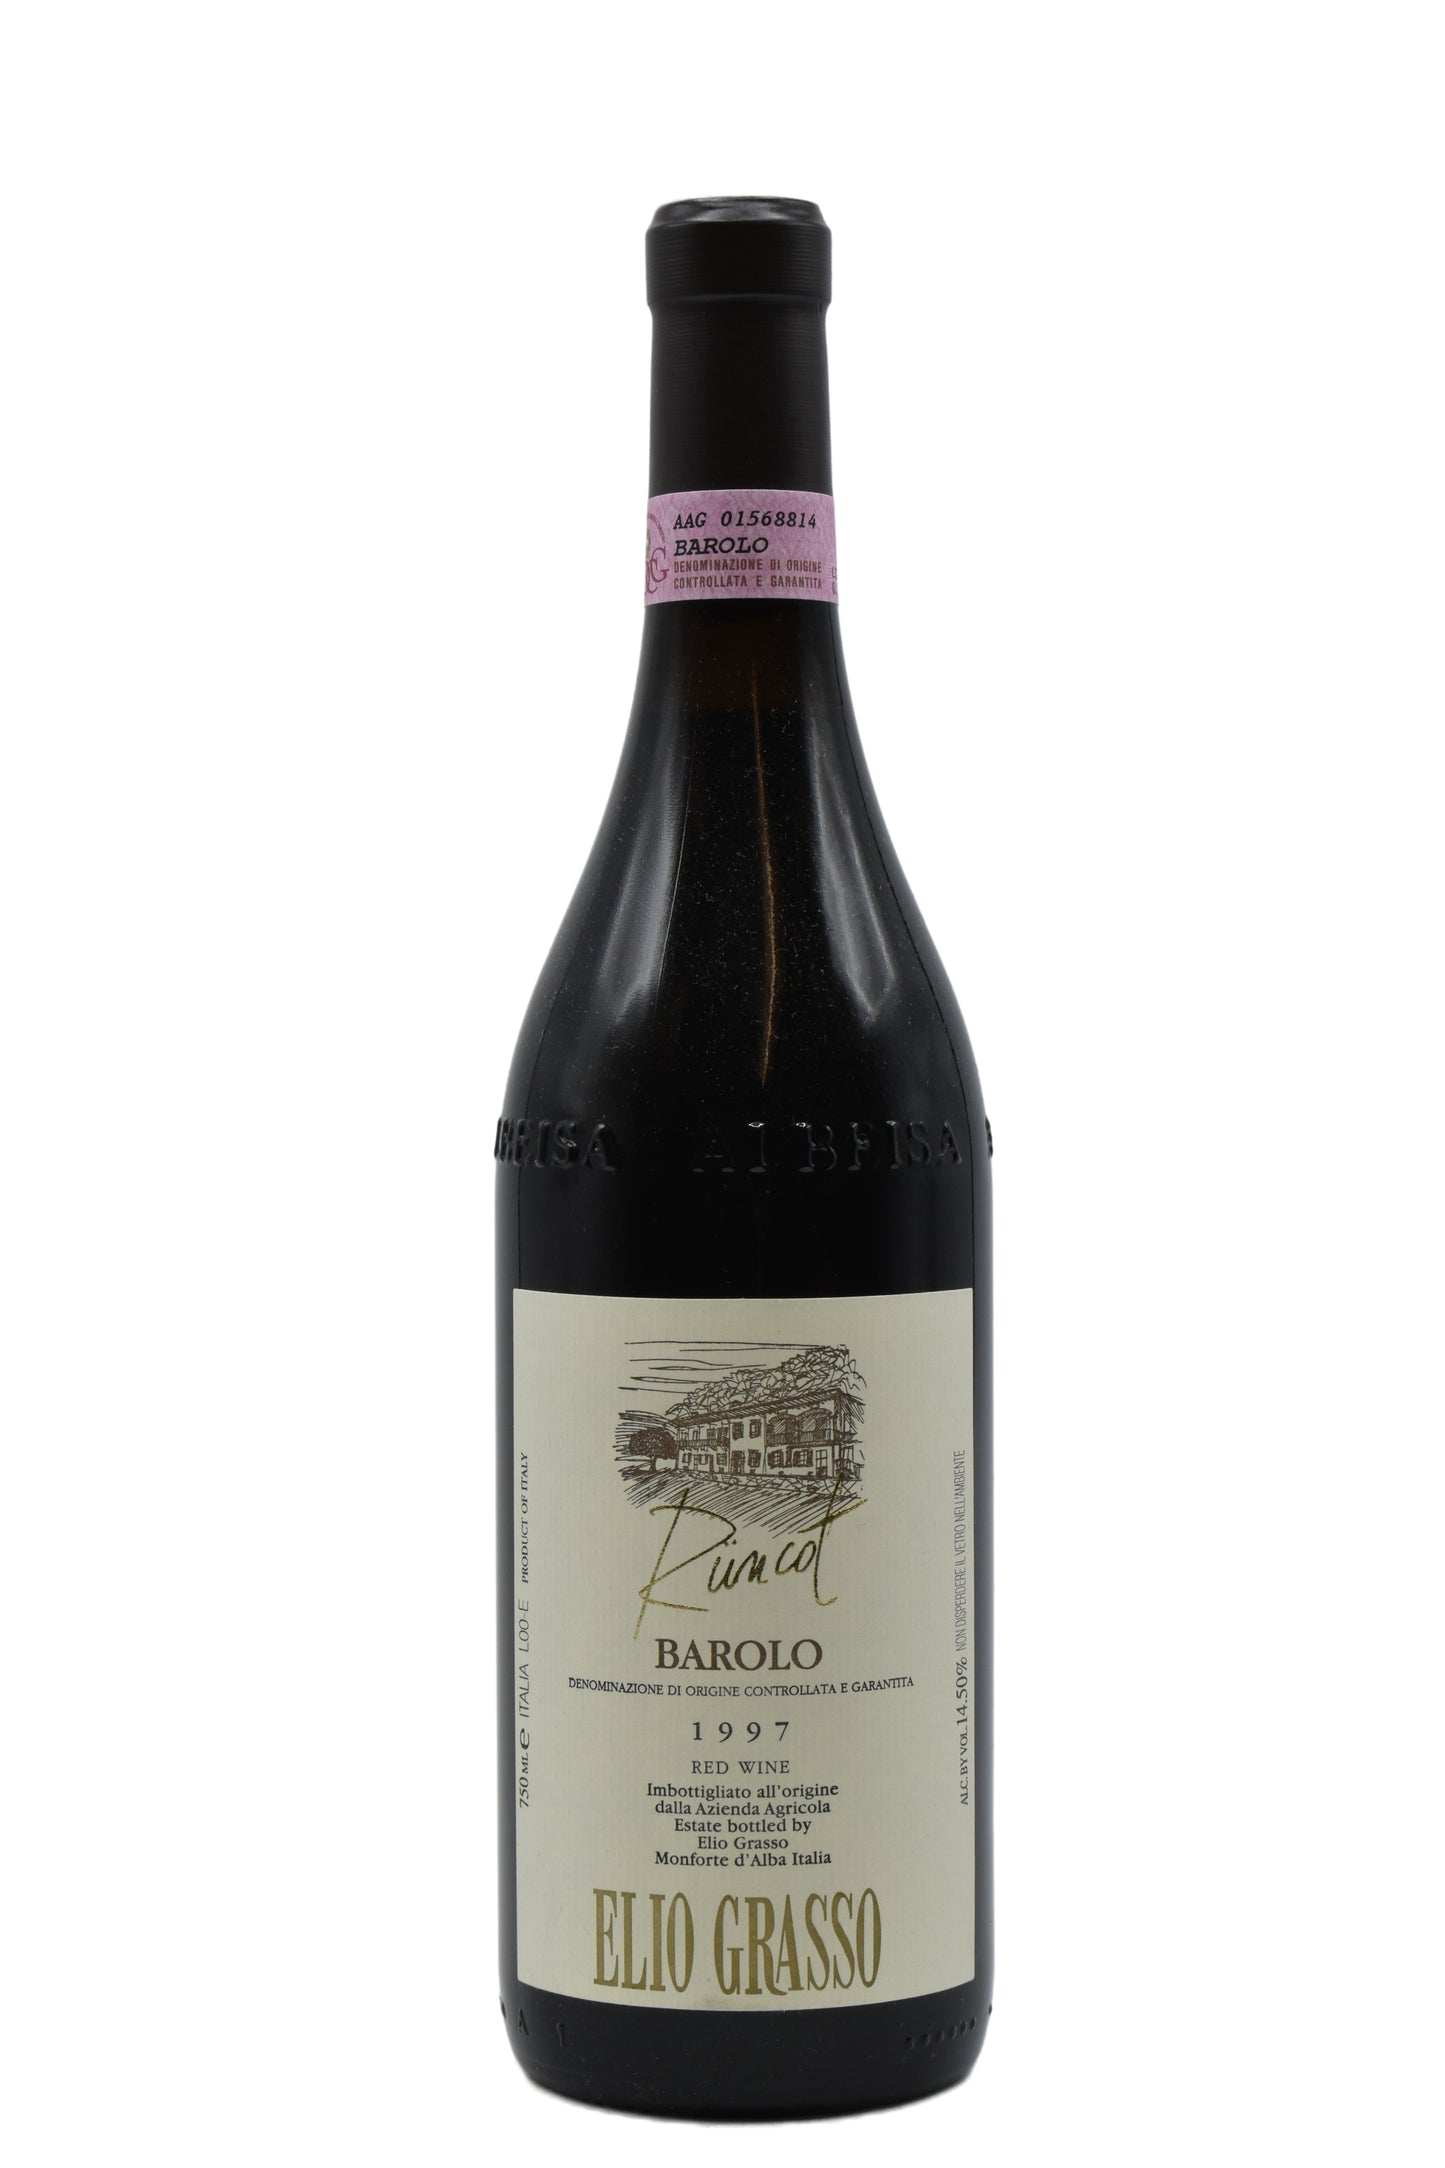 1997 Elio Grasso Barolo Riserva Runcot 750ml - Walker Wine Co.